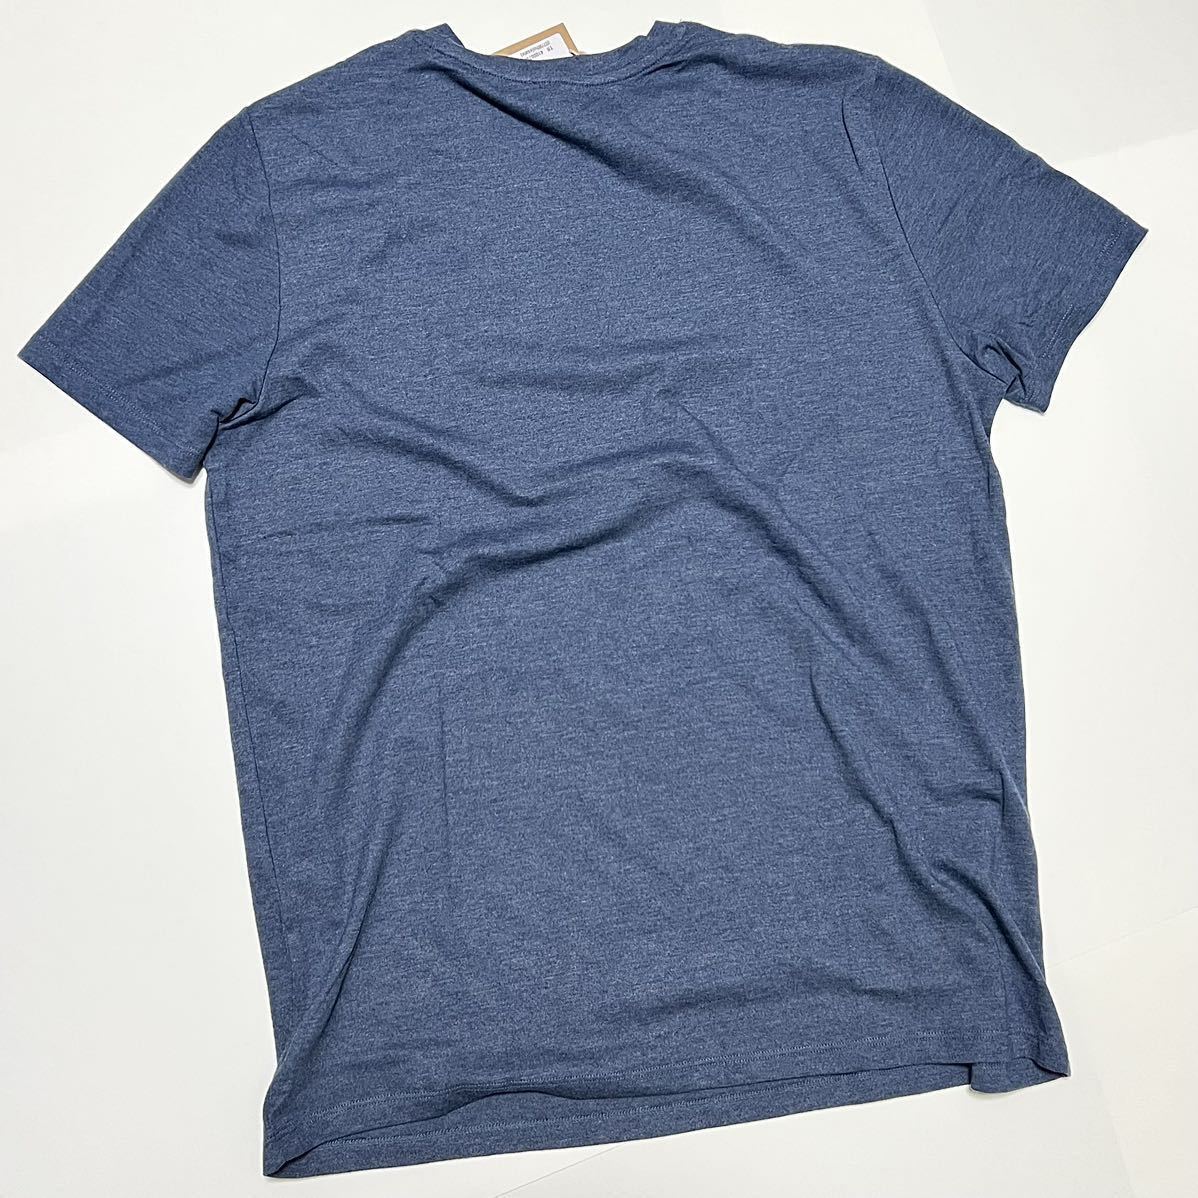 XL 新品 A.P.C. アーペーセー VPC ロゴ Tシャツ 半袖 APC ネイビー フロント VPCロゴ カラーTシャツ ロゴT フロント ビッグロゴ メンズ_画像3